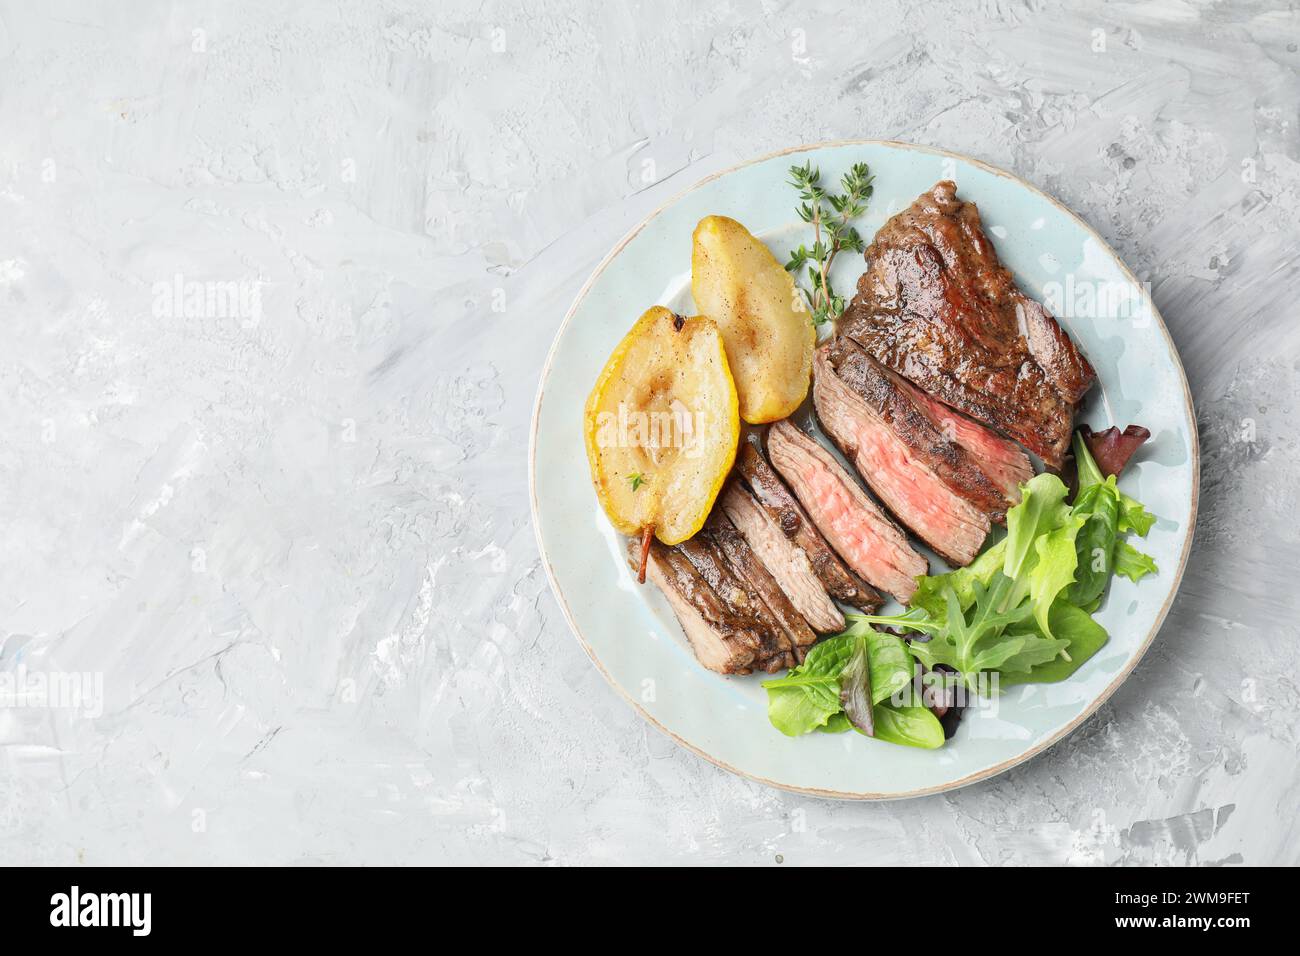 Morceaux de délicieuse viande de bœuf rôtie, poire caramélisée et légumes verts sur une table texturée légère, vue de dessus. Espace pour le texte Banque D'Images